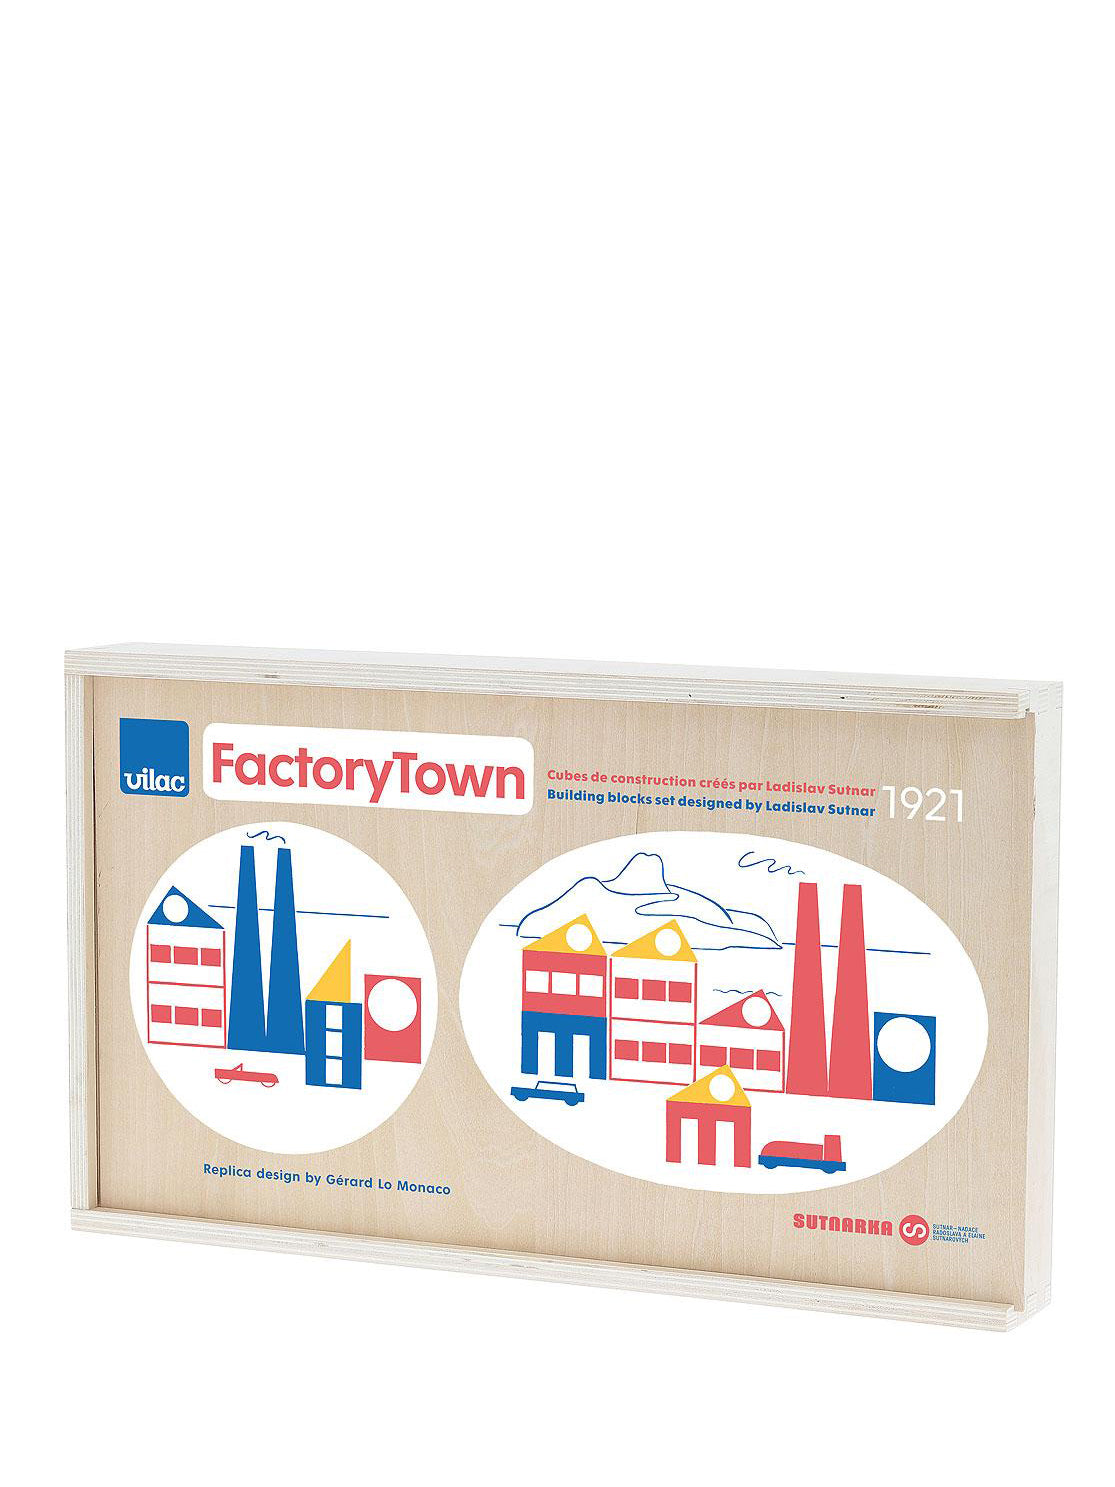 Factory Town building blocks set by Ladislav Suttnar